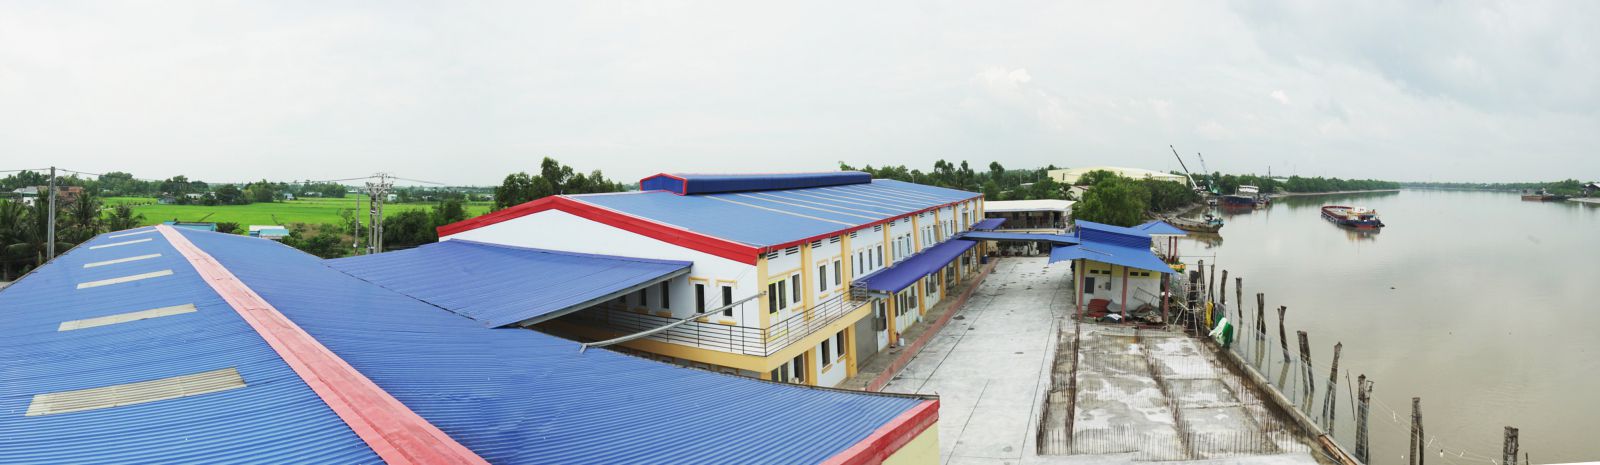 Công ty TNHH Mắm bà Thạo đã đầu tư xây dựng nhà máy sản xuất mắm với khuôn viên rộng 8000 m2